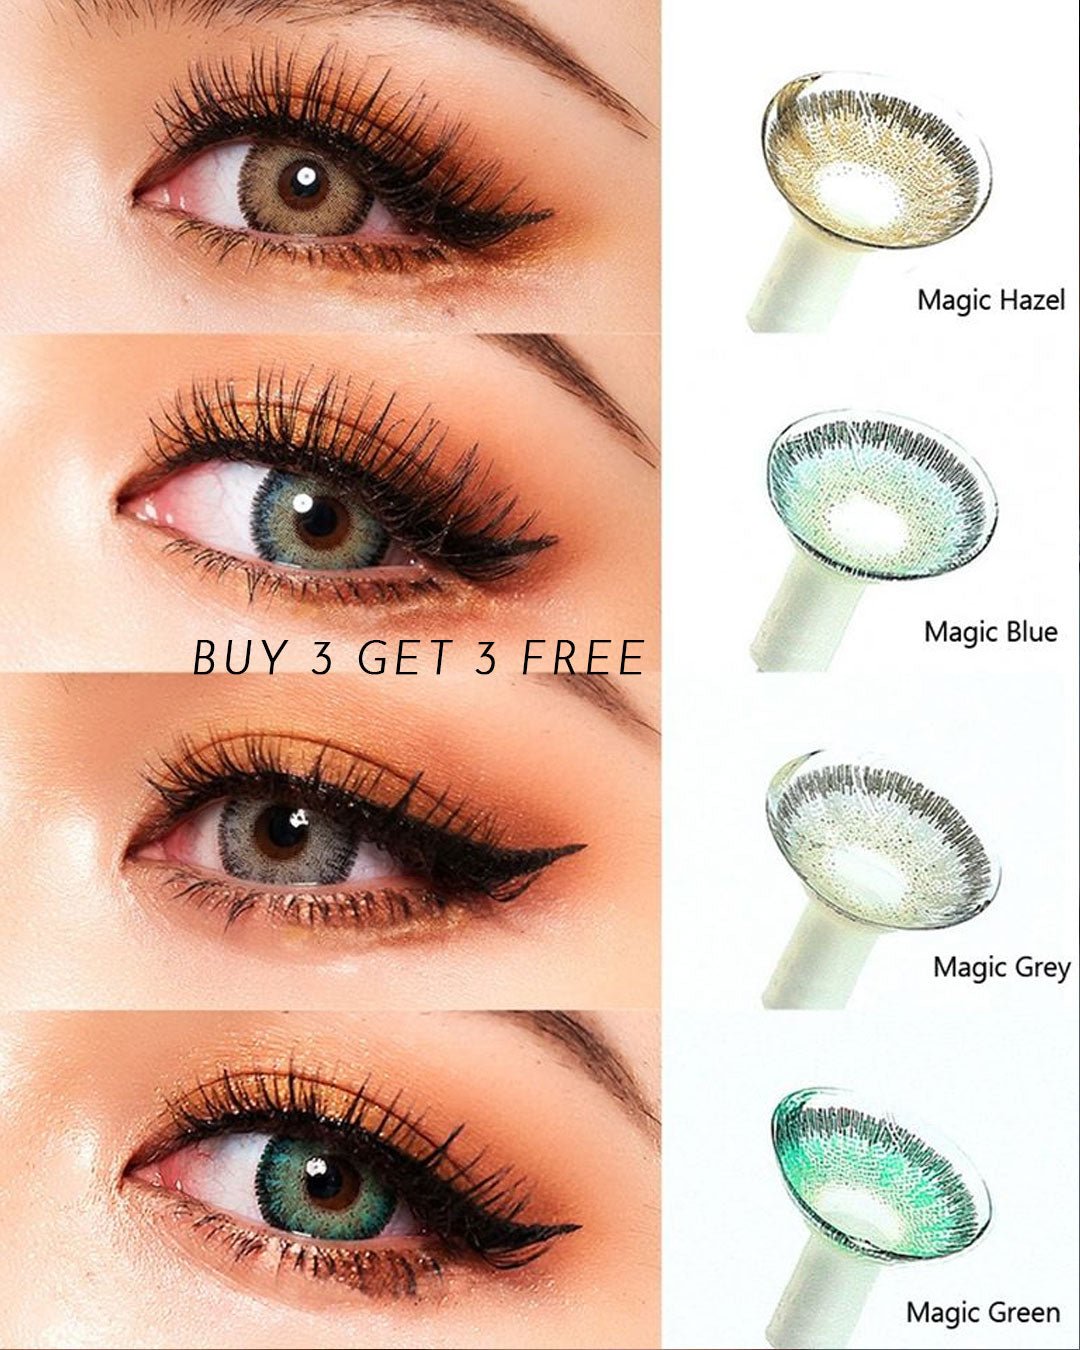 Magic Hazel Yearly Contact Lenses - Uniieye